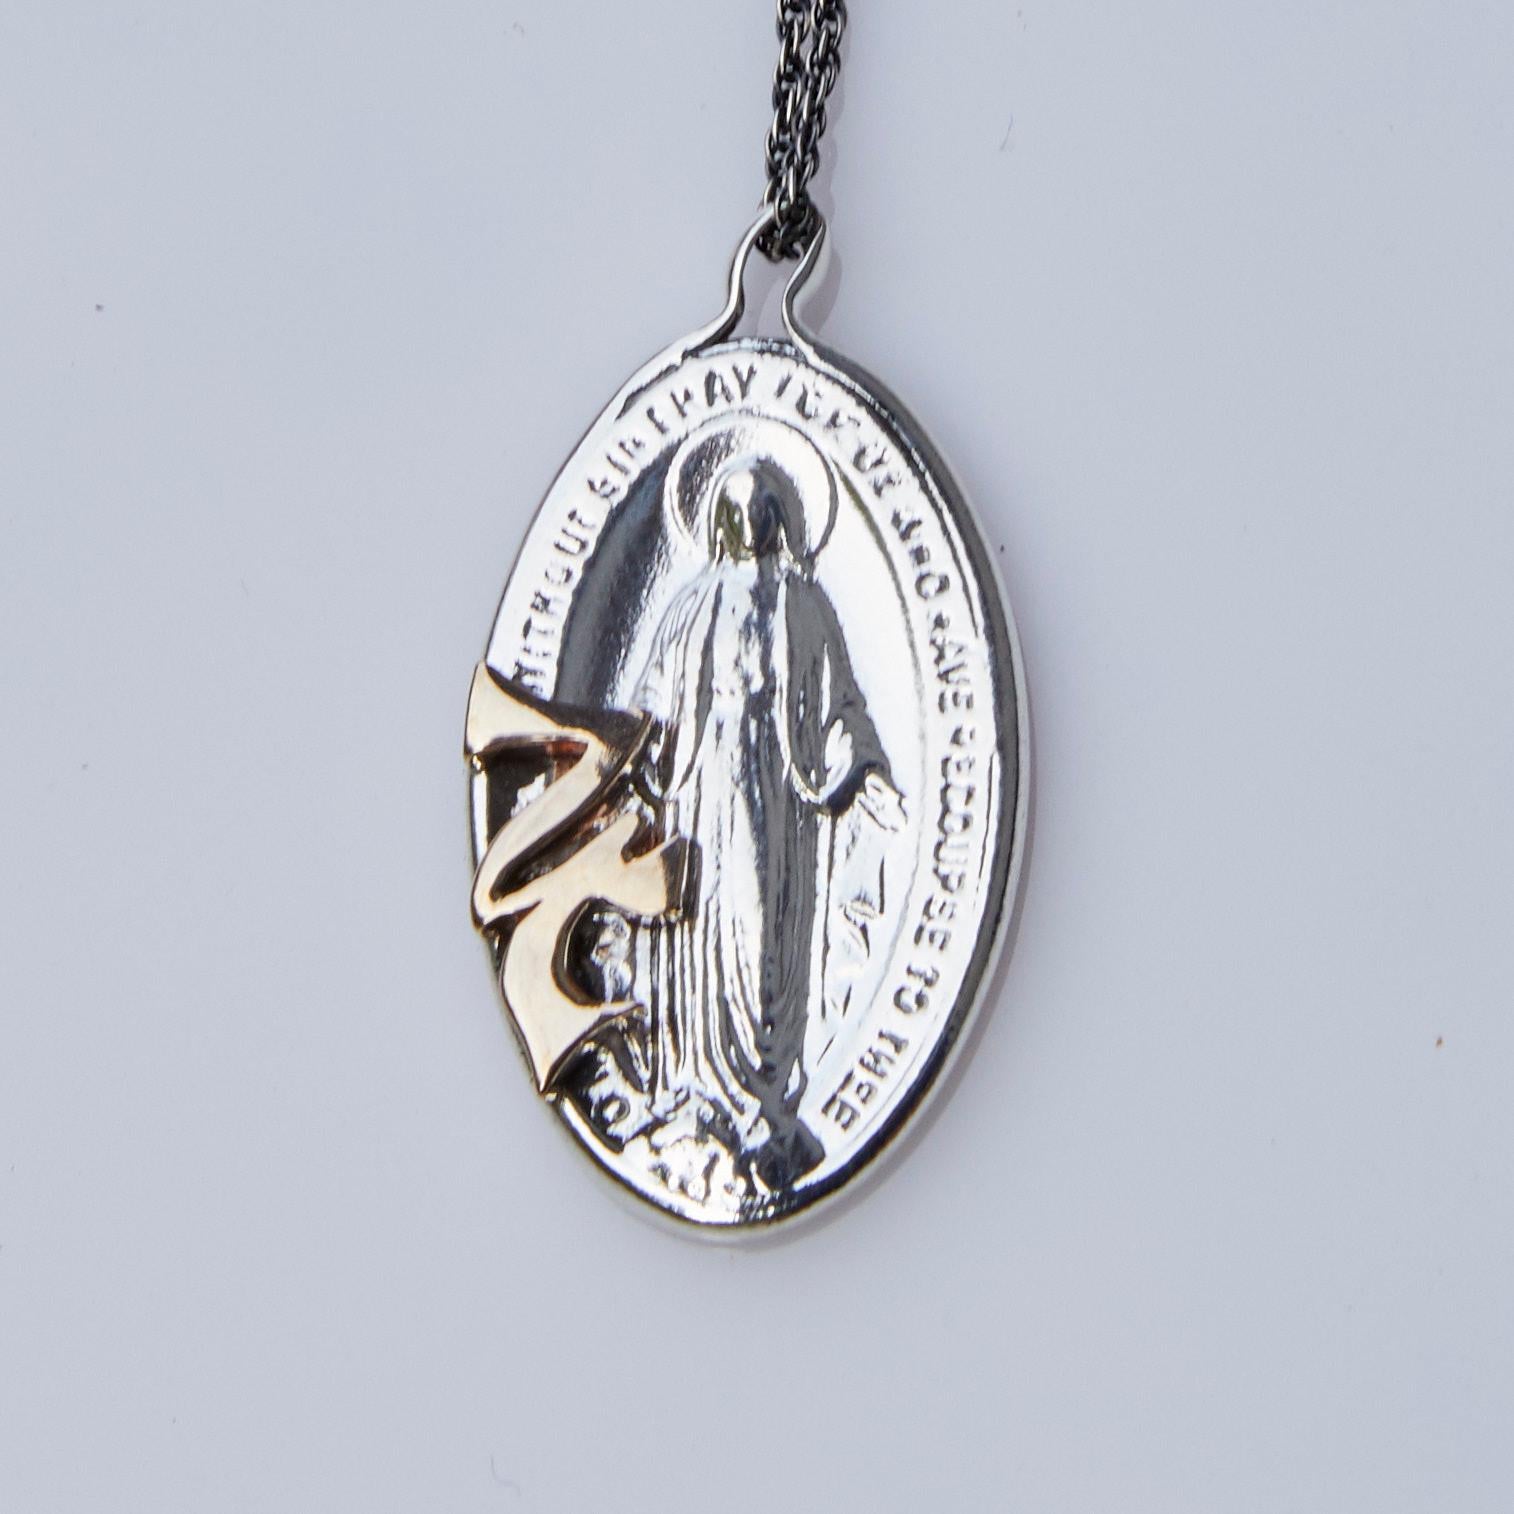 Wundertätige Medaille Oval Jungfrau Maria Jupiter Halskette Silber J DAUPHIN

J DAUPHIN Halskette aus Gold und Silber 

Die Verwendung von Medaillen und anderen heiligen Symbolen kann verschiedene Gründe haben, manche tragen sie als eine Art Schutz.